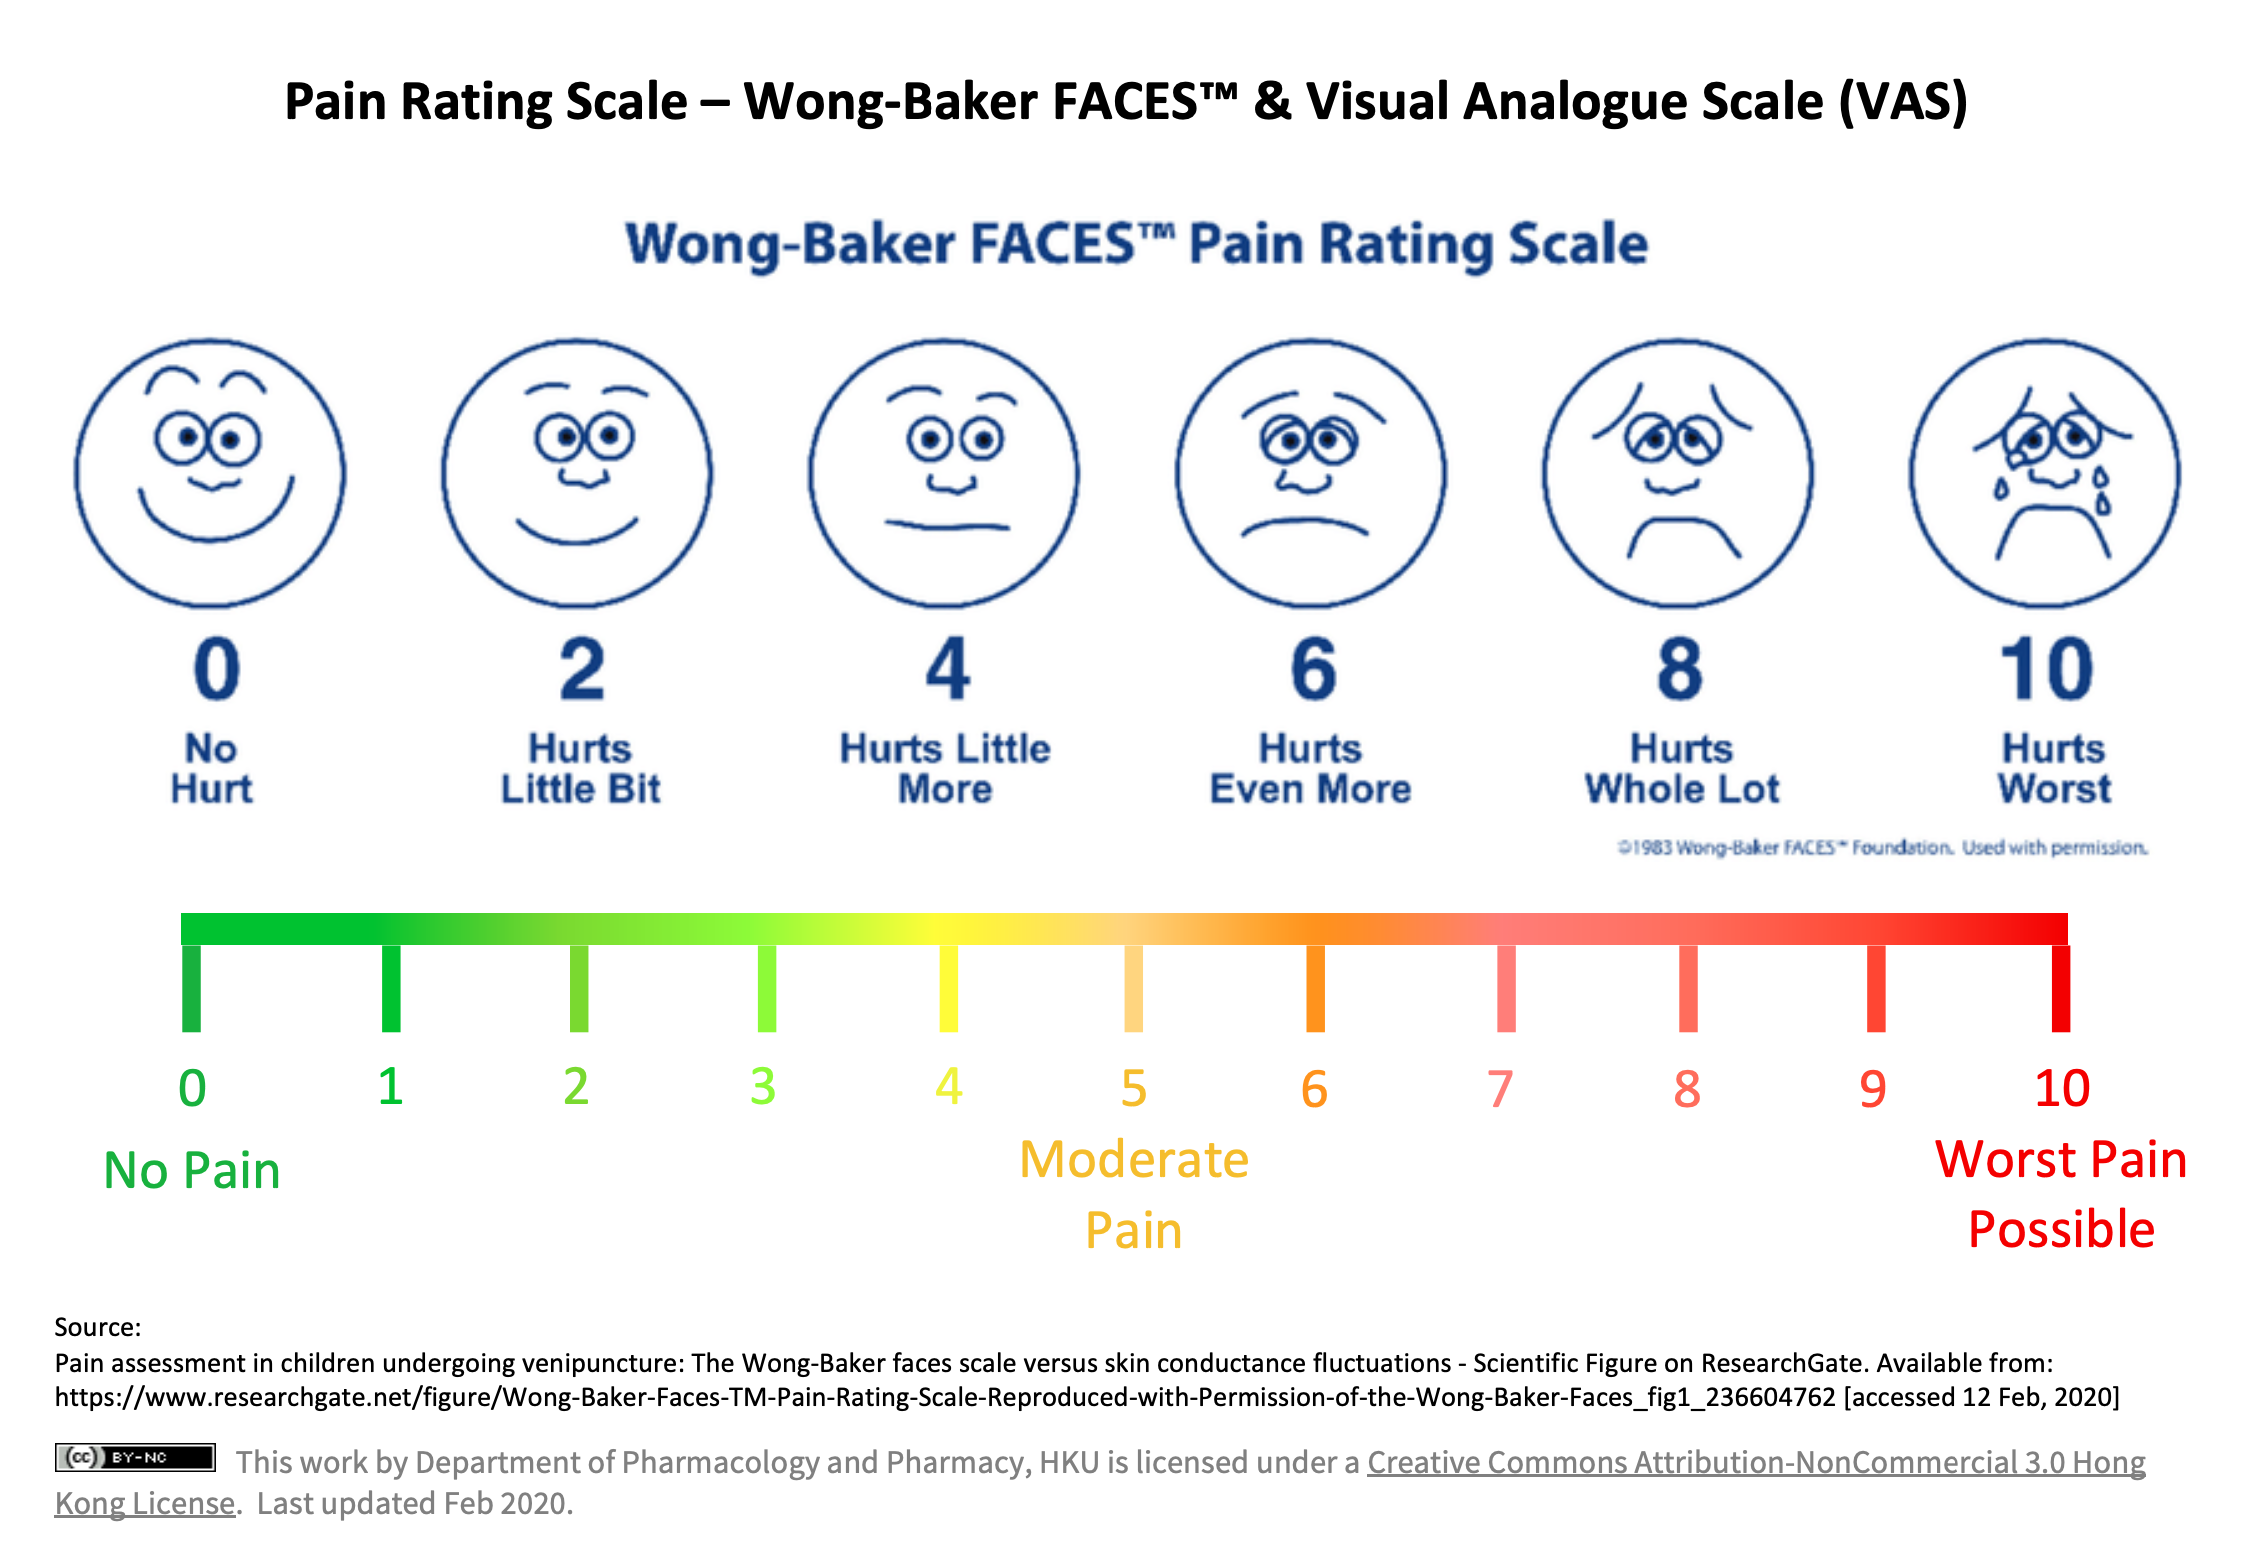 https://pcpc.hku.hk/content/uploads/2021/05/Pain-Rating-Scale_Wong-Baker-Face-VAS.png